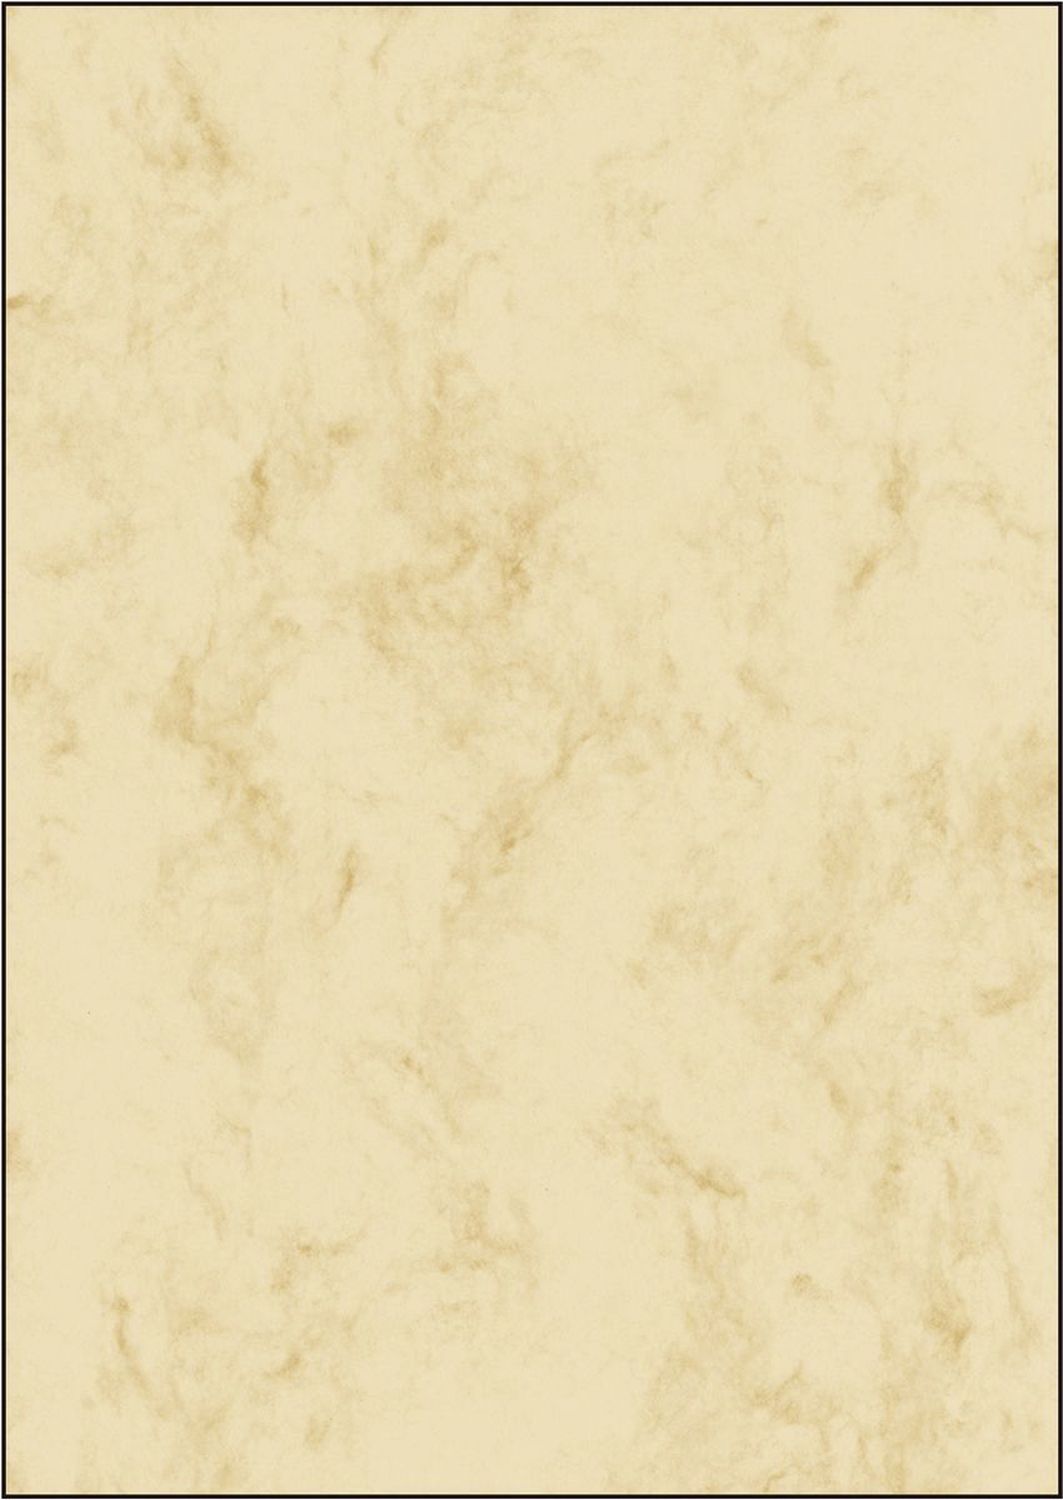 Motivpapier Sigel DP181, Marmorpapier beige, A4, 90 g/qm, 25 Blatt